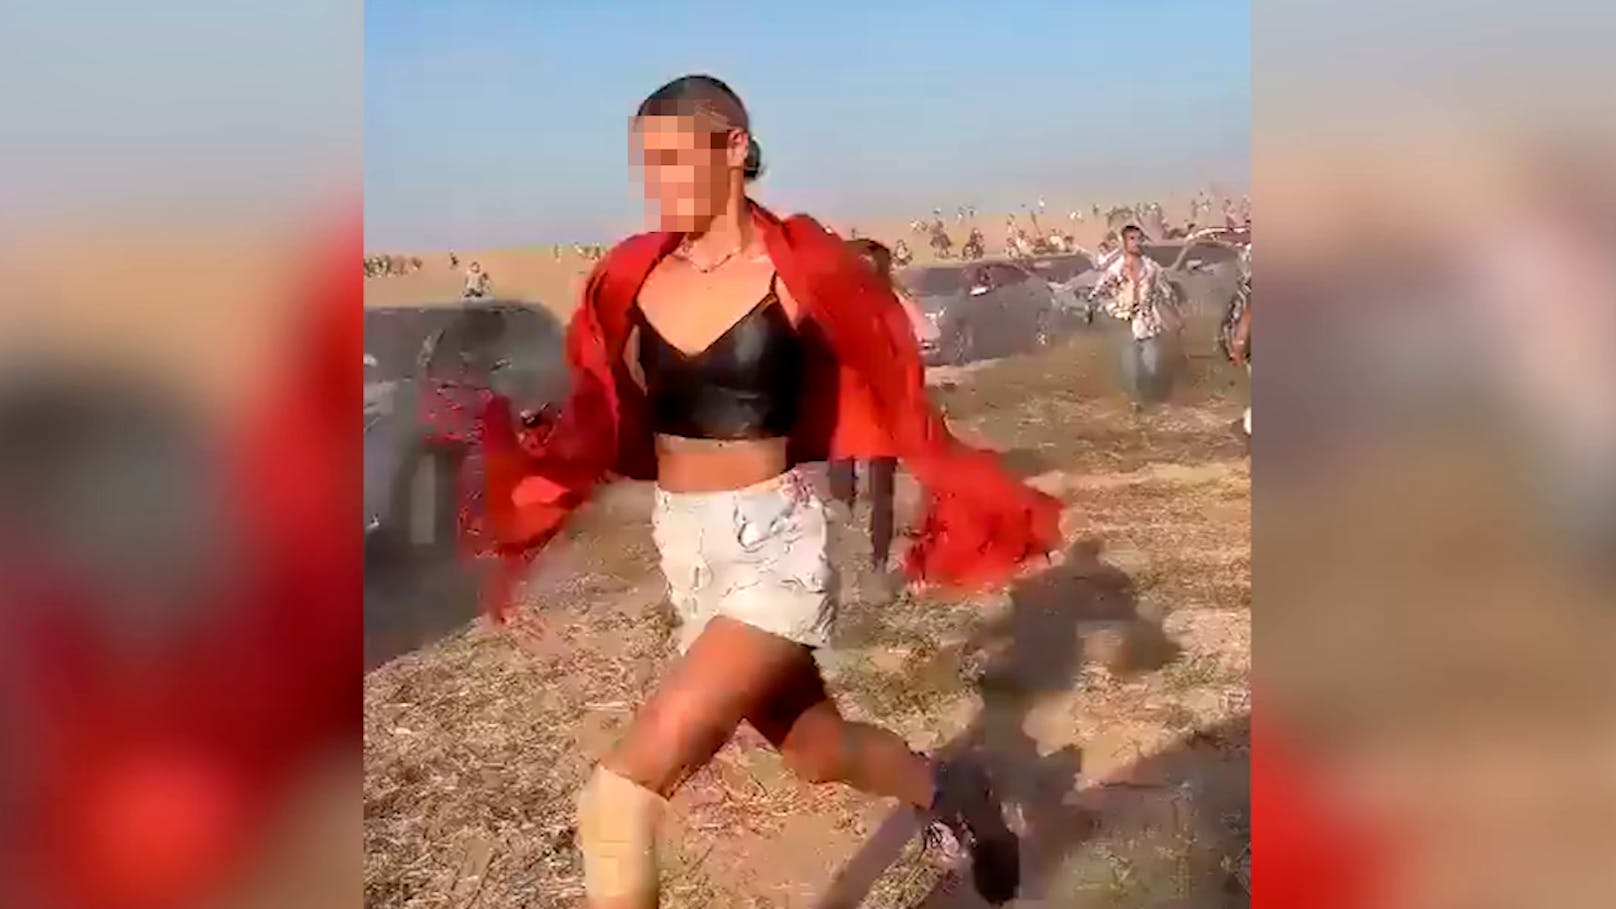 Die Hamas griff am 7. Oktober auch ein Musikfestival in Israel an. Hunderte flüchteten zu Fuß wie Videos in den sozialen Medien zeigen. Unter den hunderten Opfern befinden sich auch ausländische Staatsangehörige..